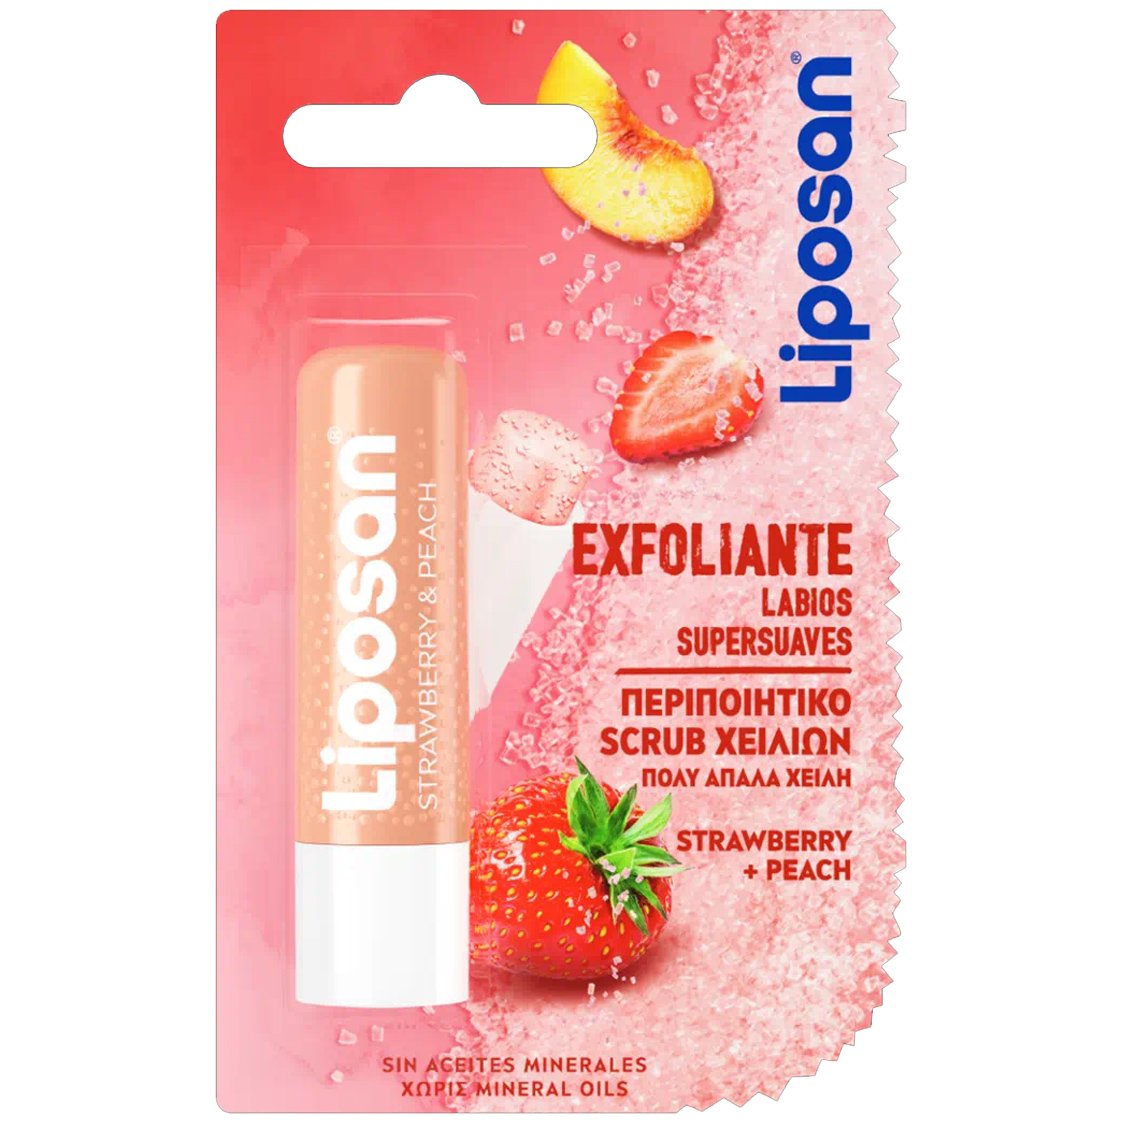 Liposan Lip Scrub Strawberry & Peach Περιποίηση Φυσικής Απολέπισης Χειλιών με Άρωμα Φράουλα & Ροδάκινο για Βελούδινη & Απαλή Αίσθηση 4.8g